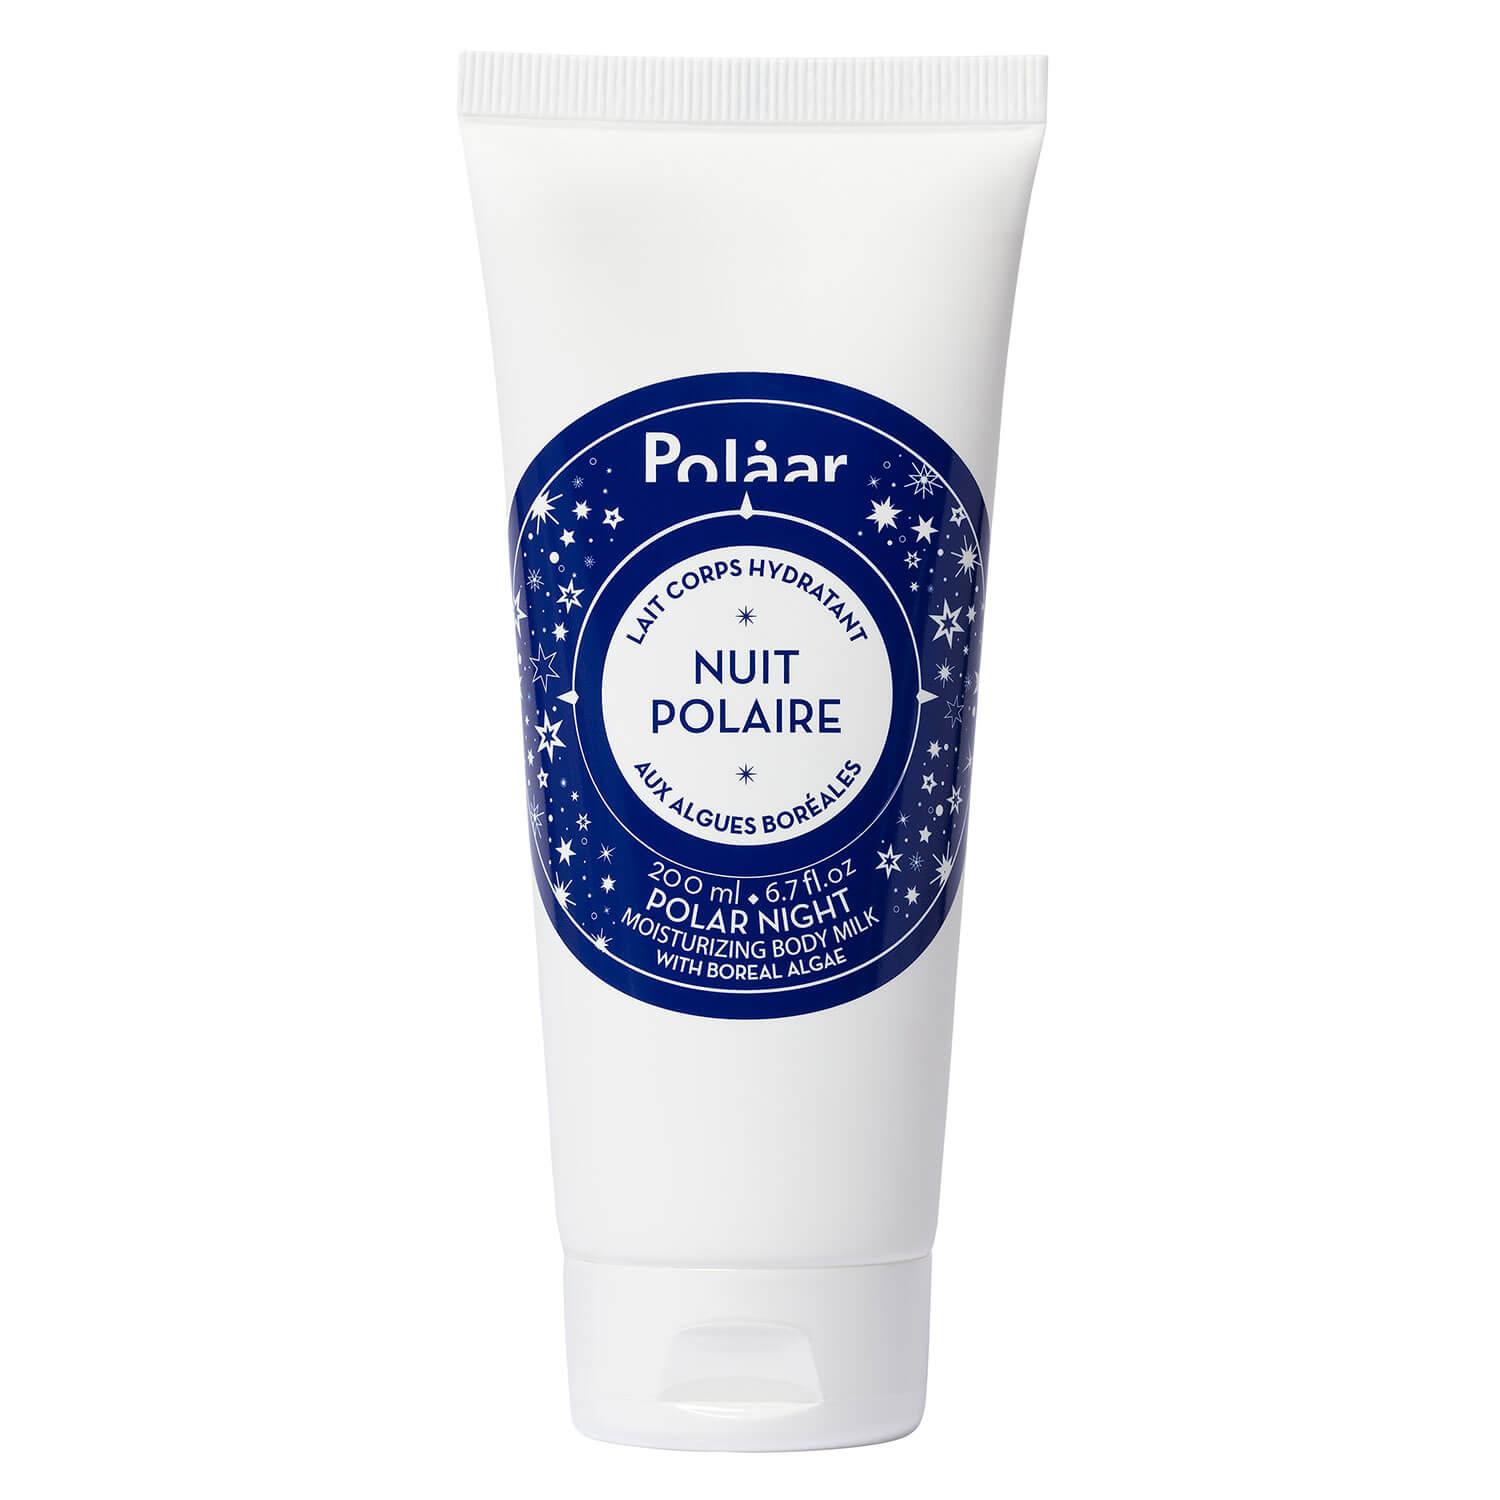 Polaar - Polar Night Moisturizing Body Milk